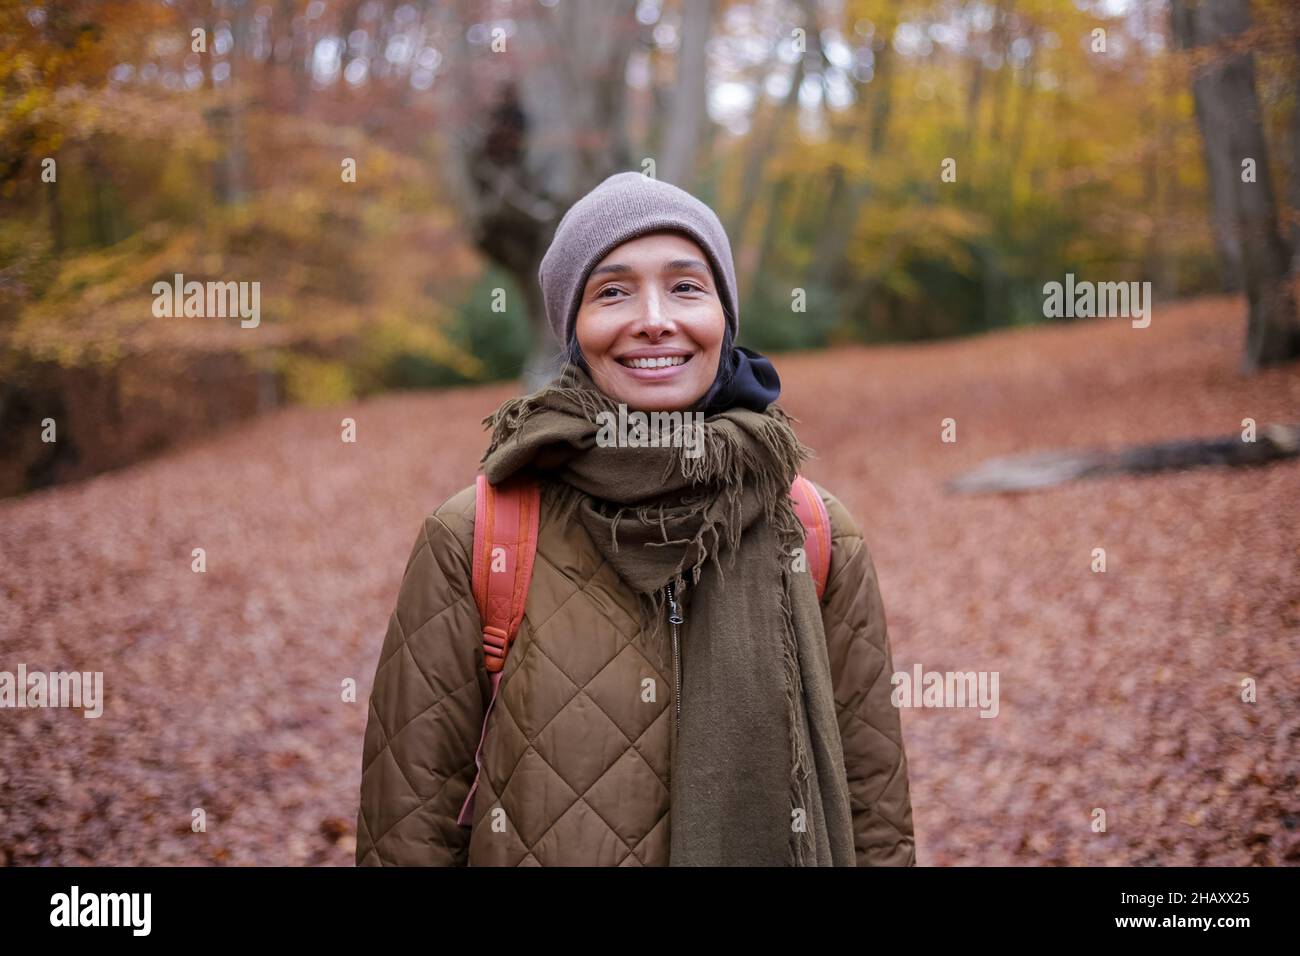 Fröhliche, ethnische Frau in Oberbekleidung und Hut lächelnd und schauend auf die Kamera, während sie am Wochenende inmitten von Bäumen im Herbstwald steht Stockfoto